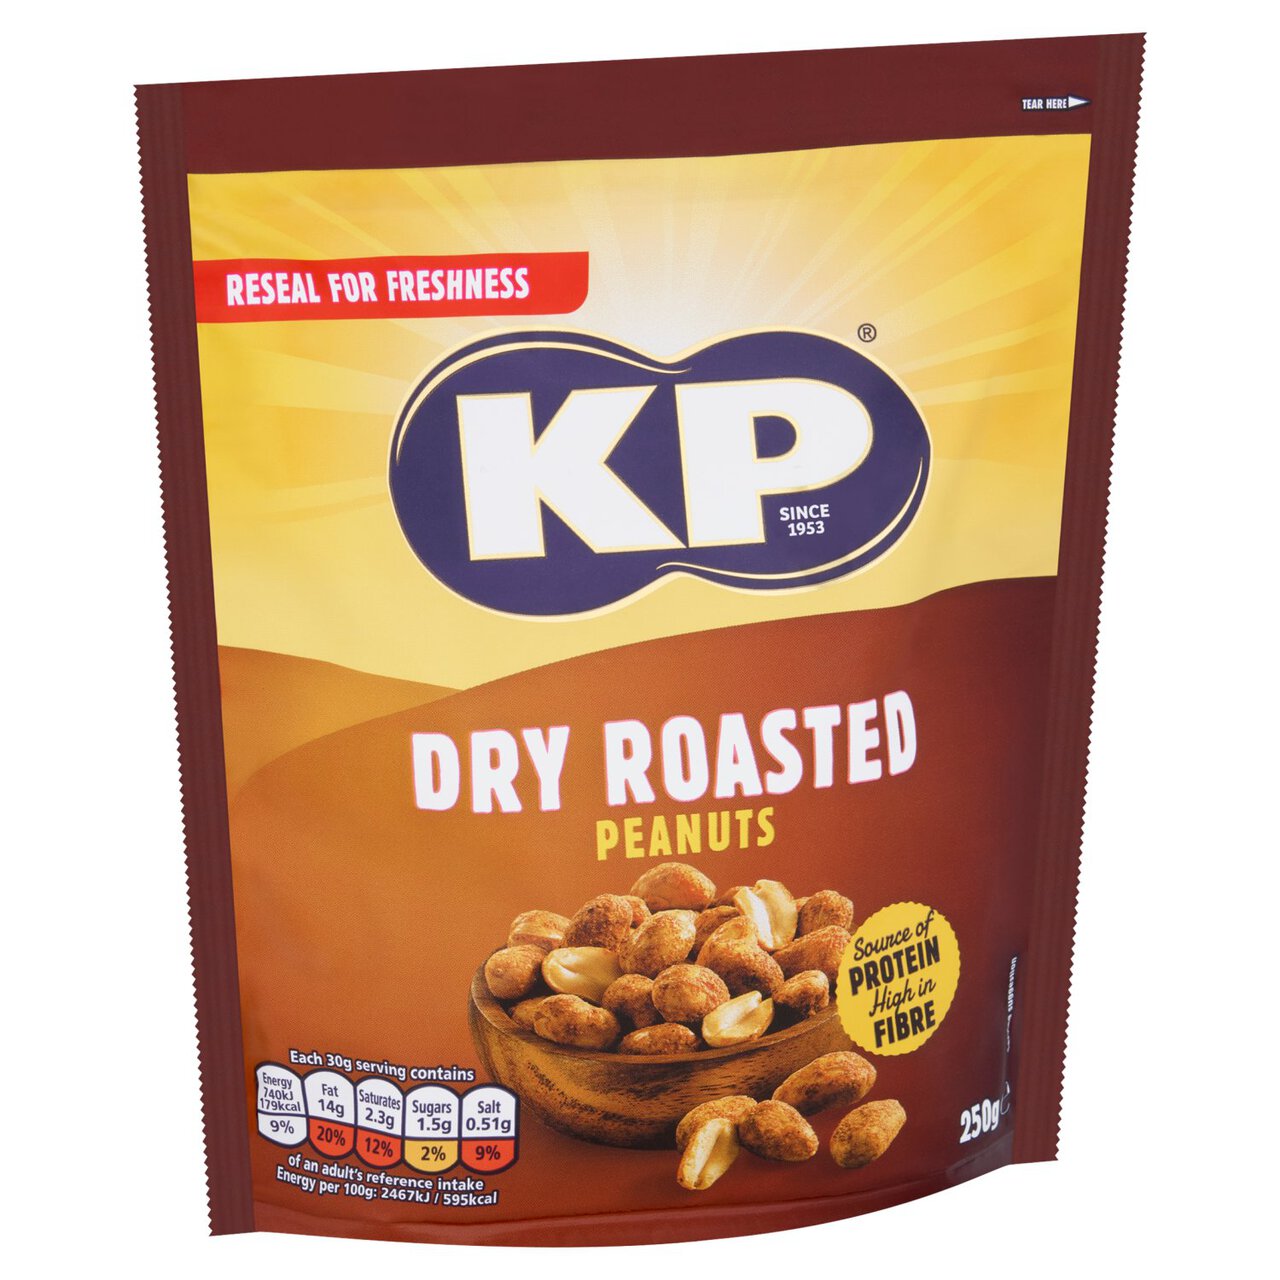 KP Dry Roasted Peanuts 250g